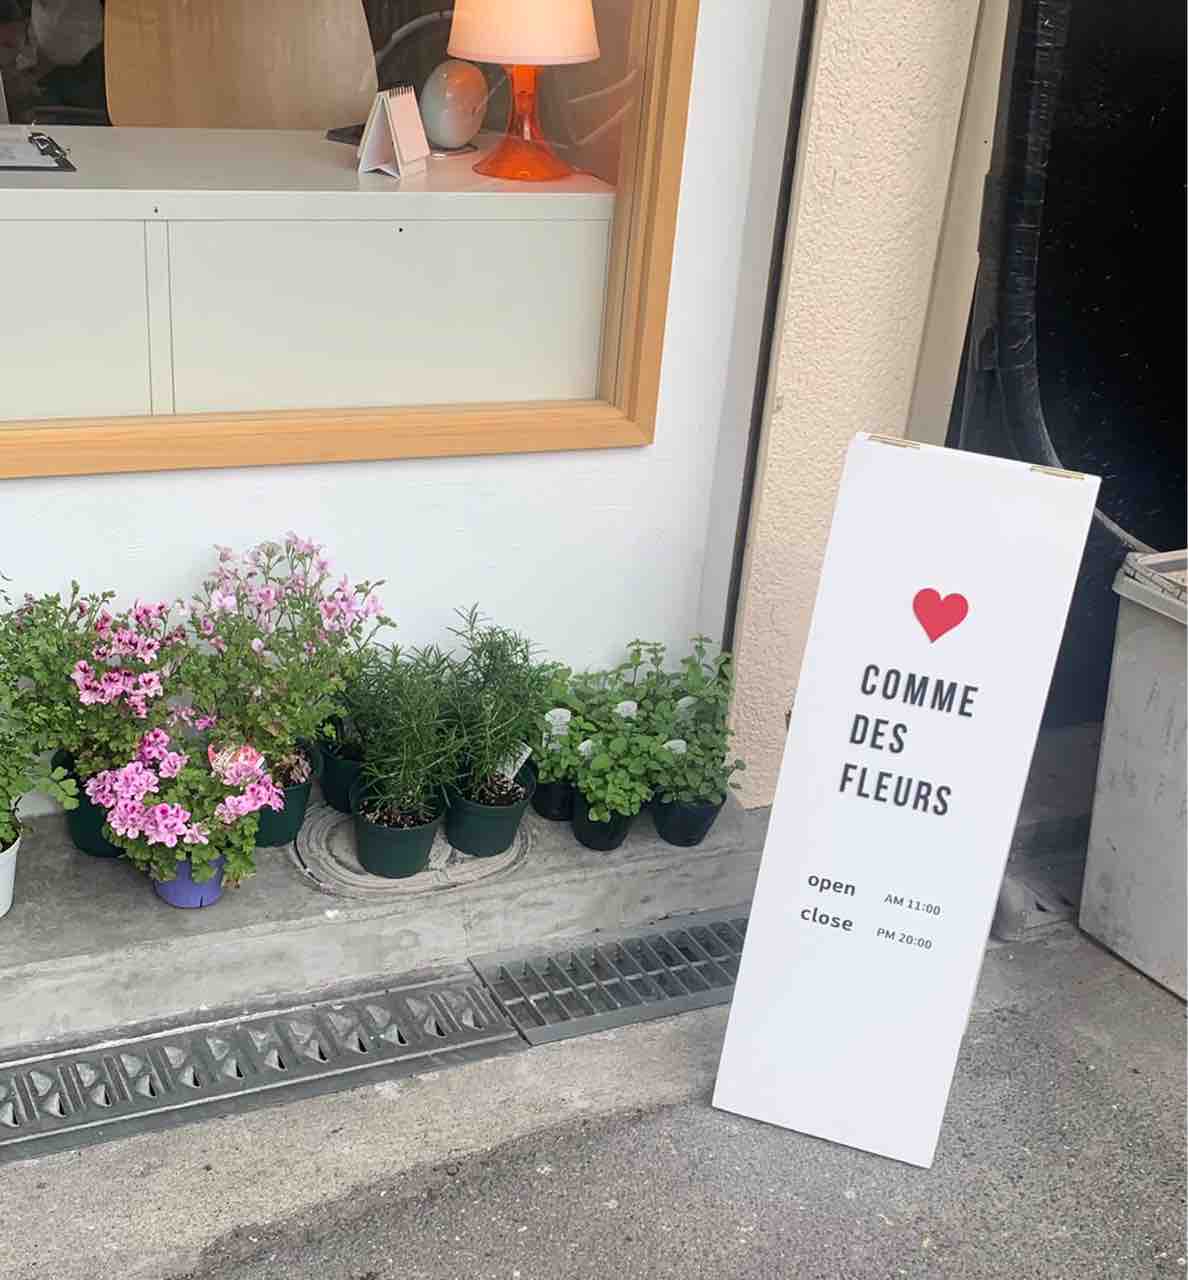 映えること間違いなしの韓国カフェ Comme Des Fleurs をご紹介 大阪つーしん 大阪市の地域情報サイト